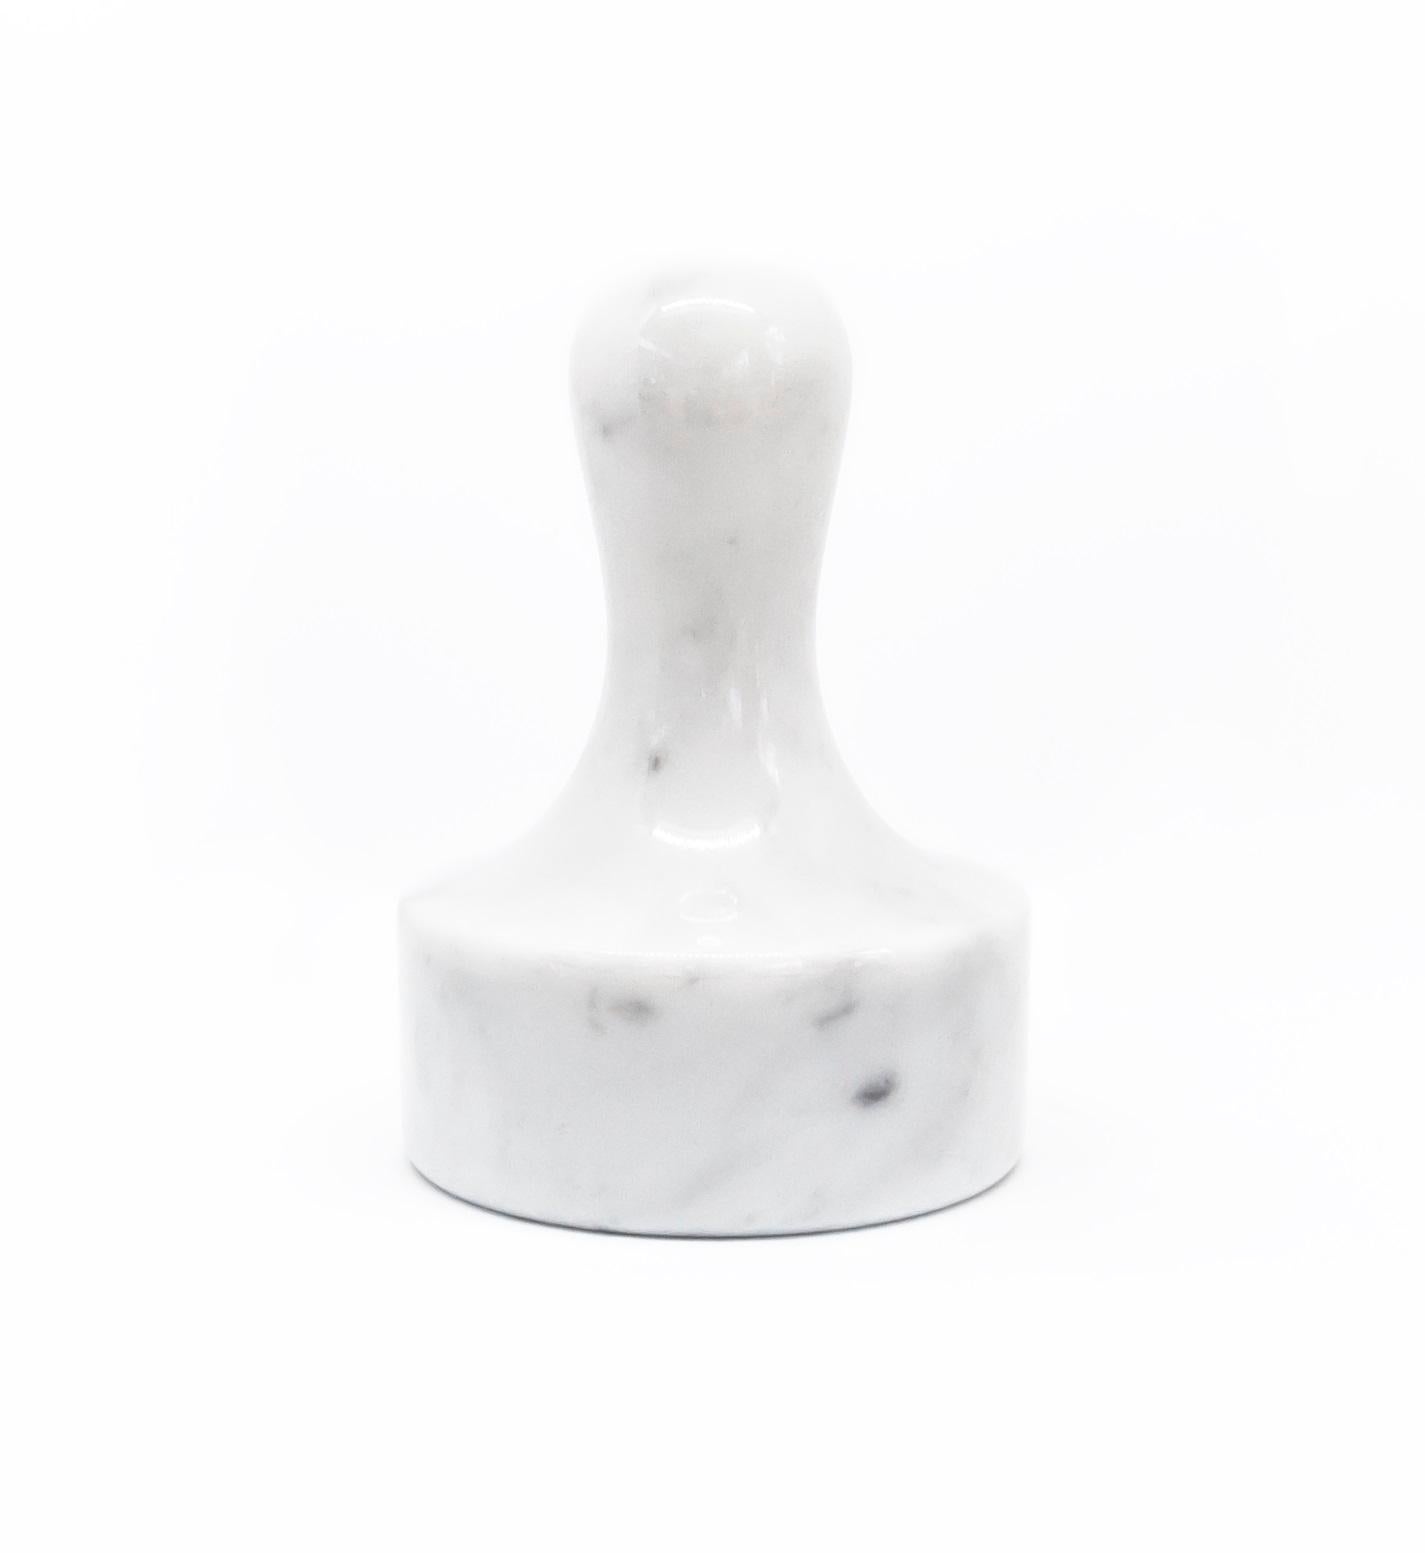 Fleischklopfer aus weißem Carrara-Marmor.

Jedes Stück ist in gewisser Weise einzigartig (da jeder Marmorblock unterschiedliche Maserungen und Schattierungen aufweist) und wird in Italien handgefertigt. Geringfügige Abweichungen in Form, Farbe und